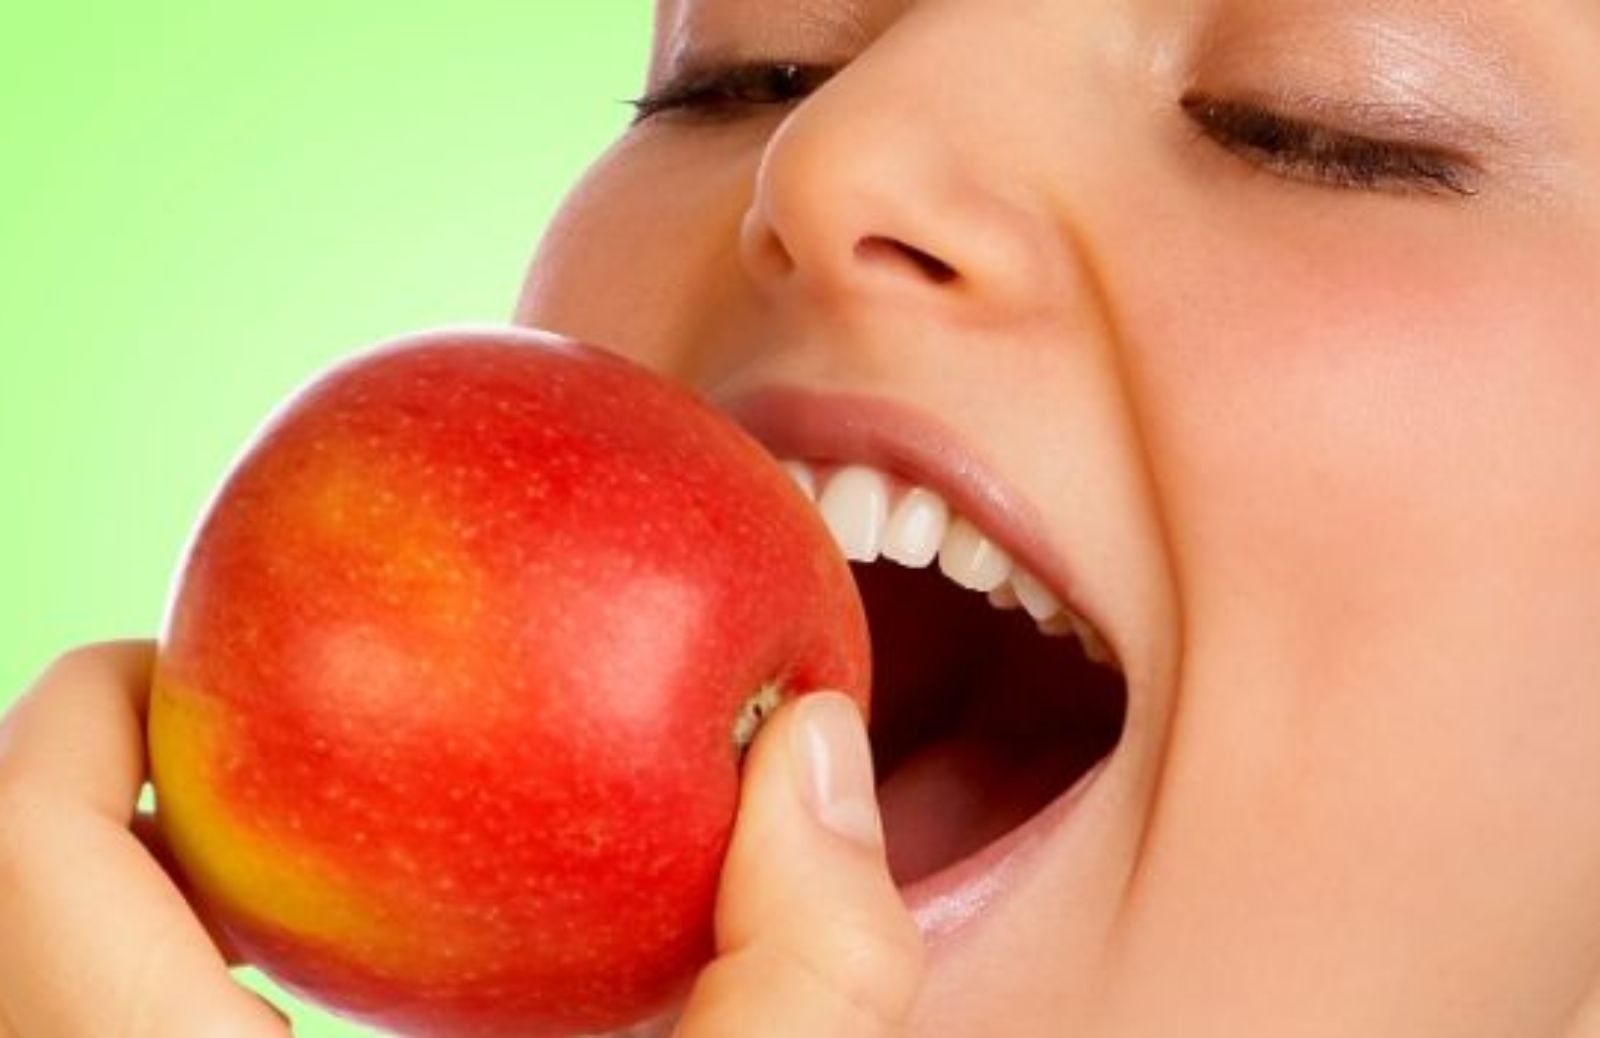 Come curarsi con i benefici della mela